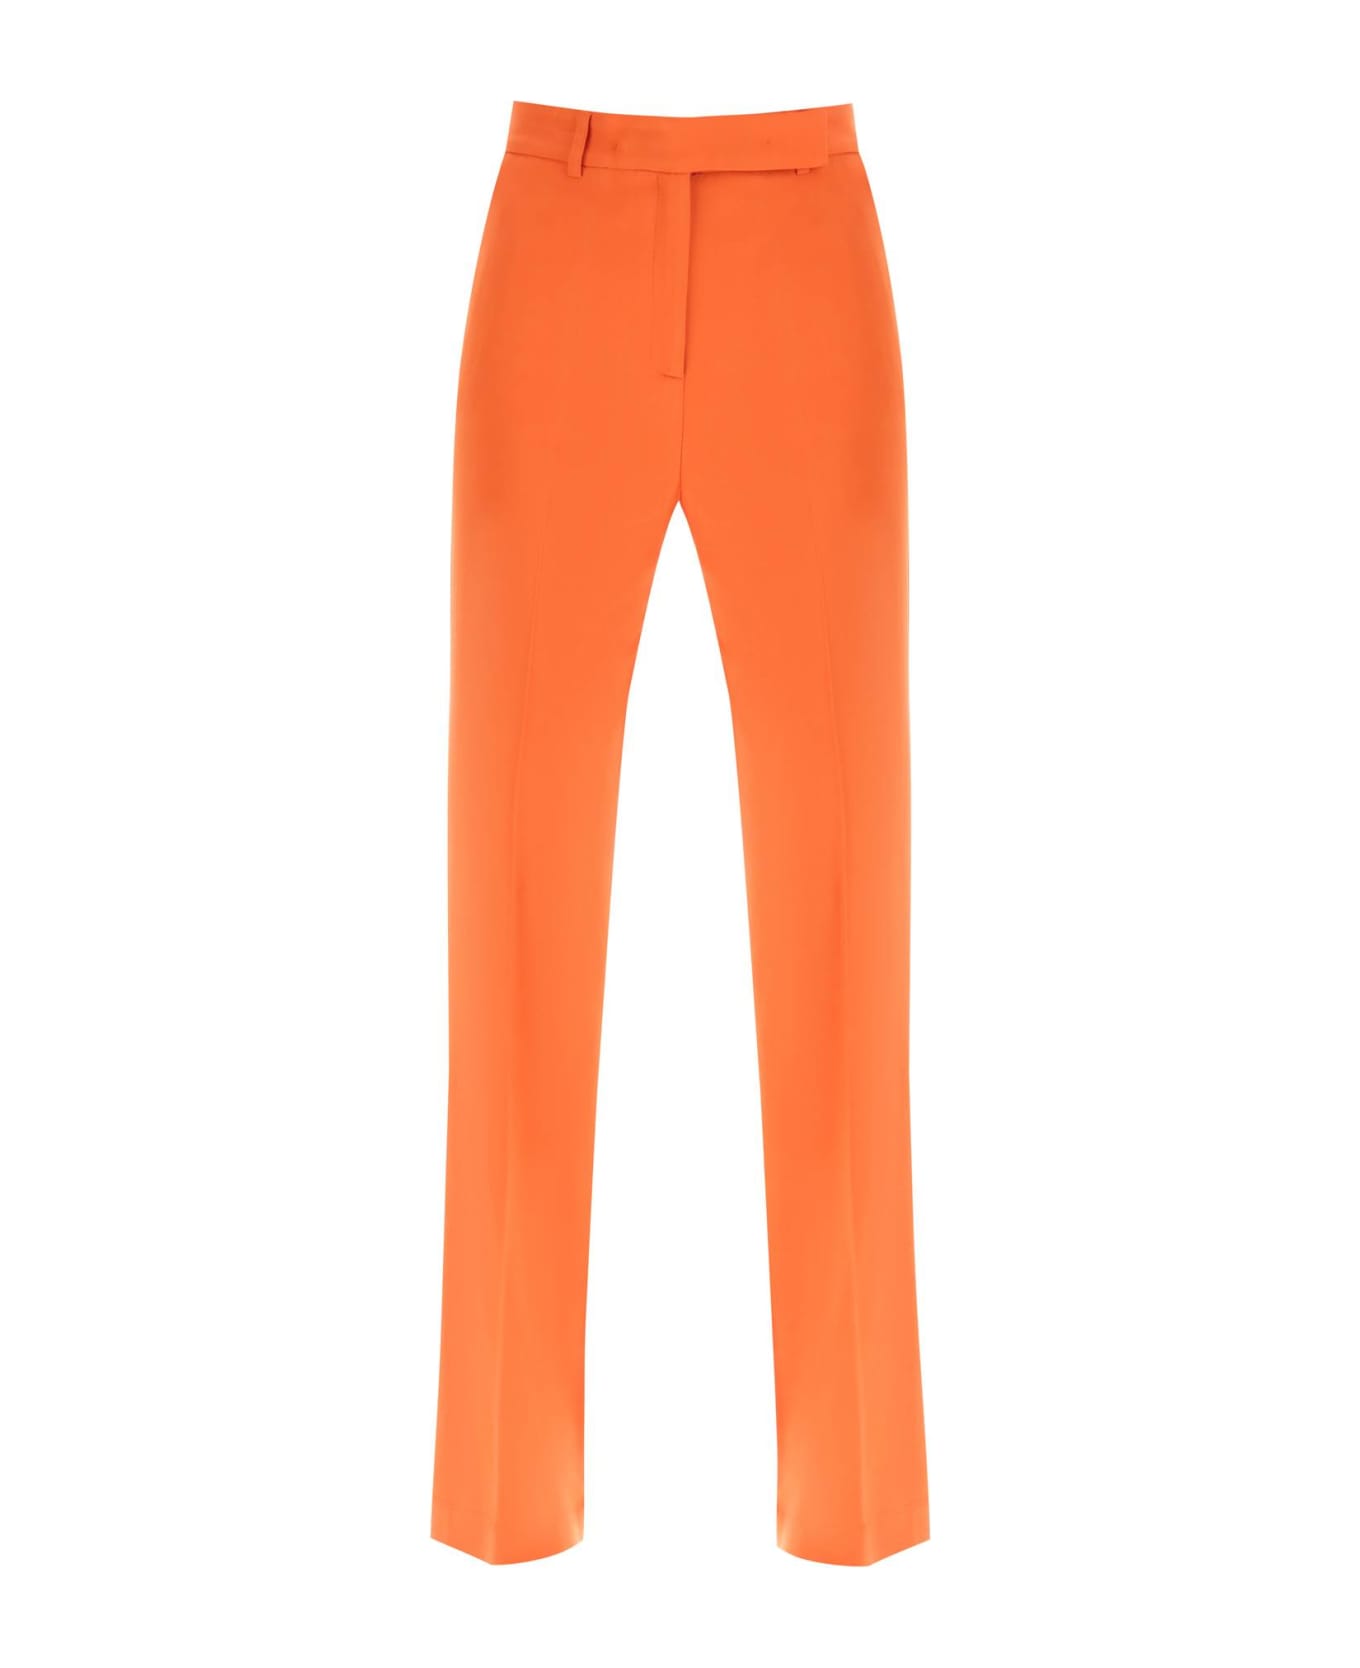 Hebe Studio 'lover' Canvas Trousers - ORANGE (Orange)